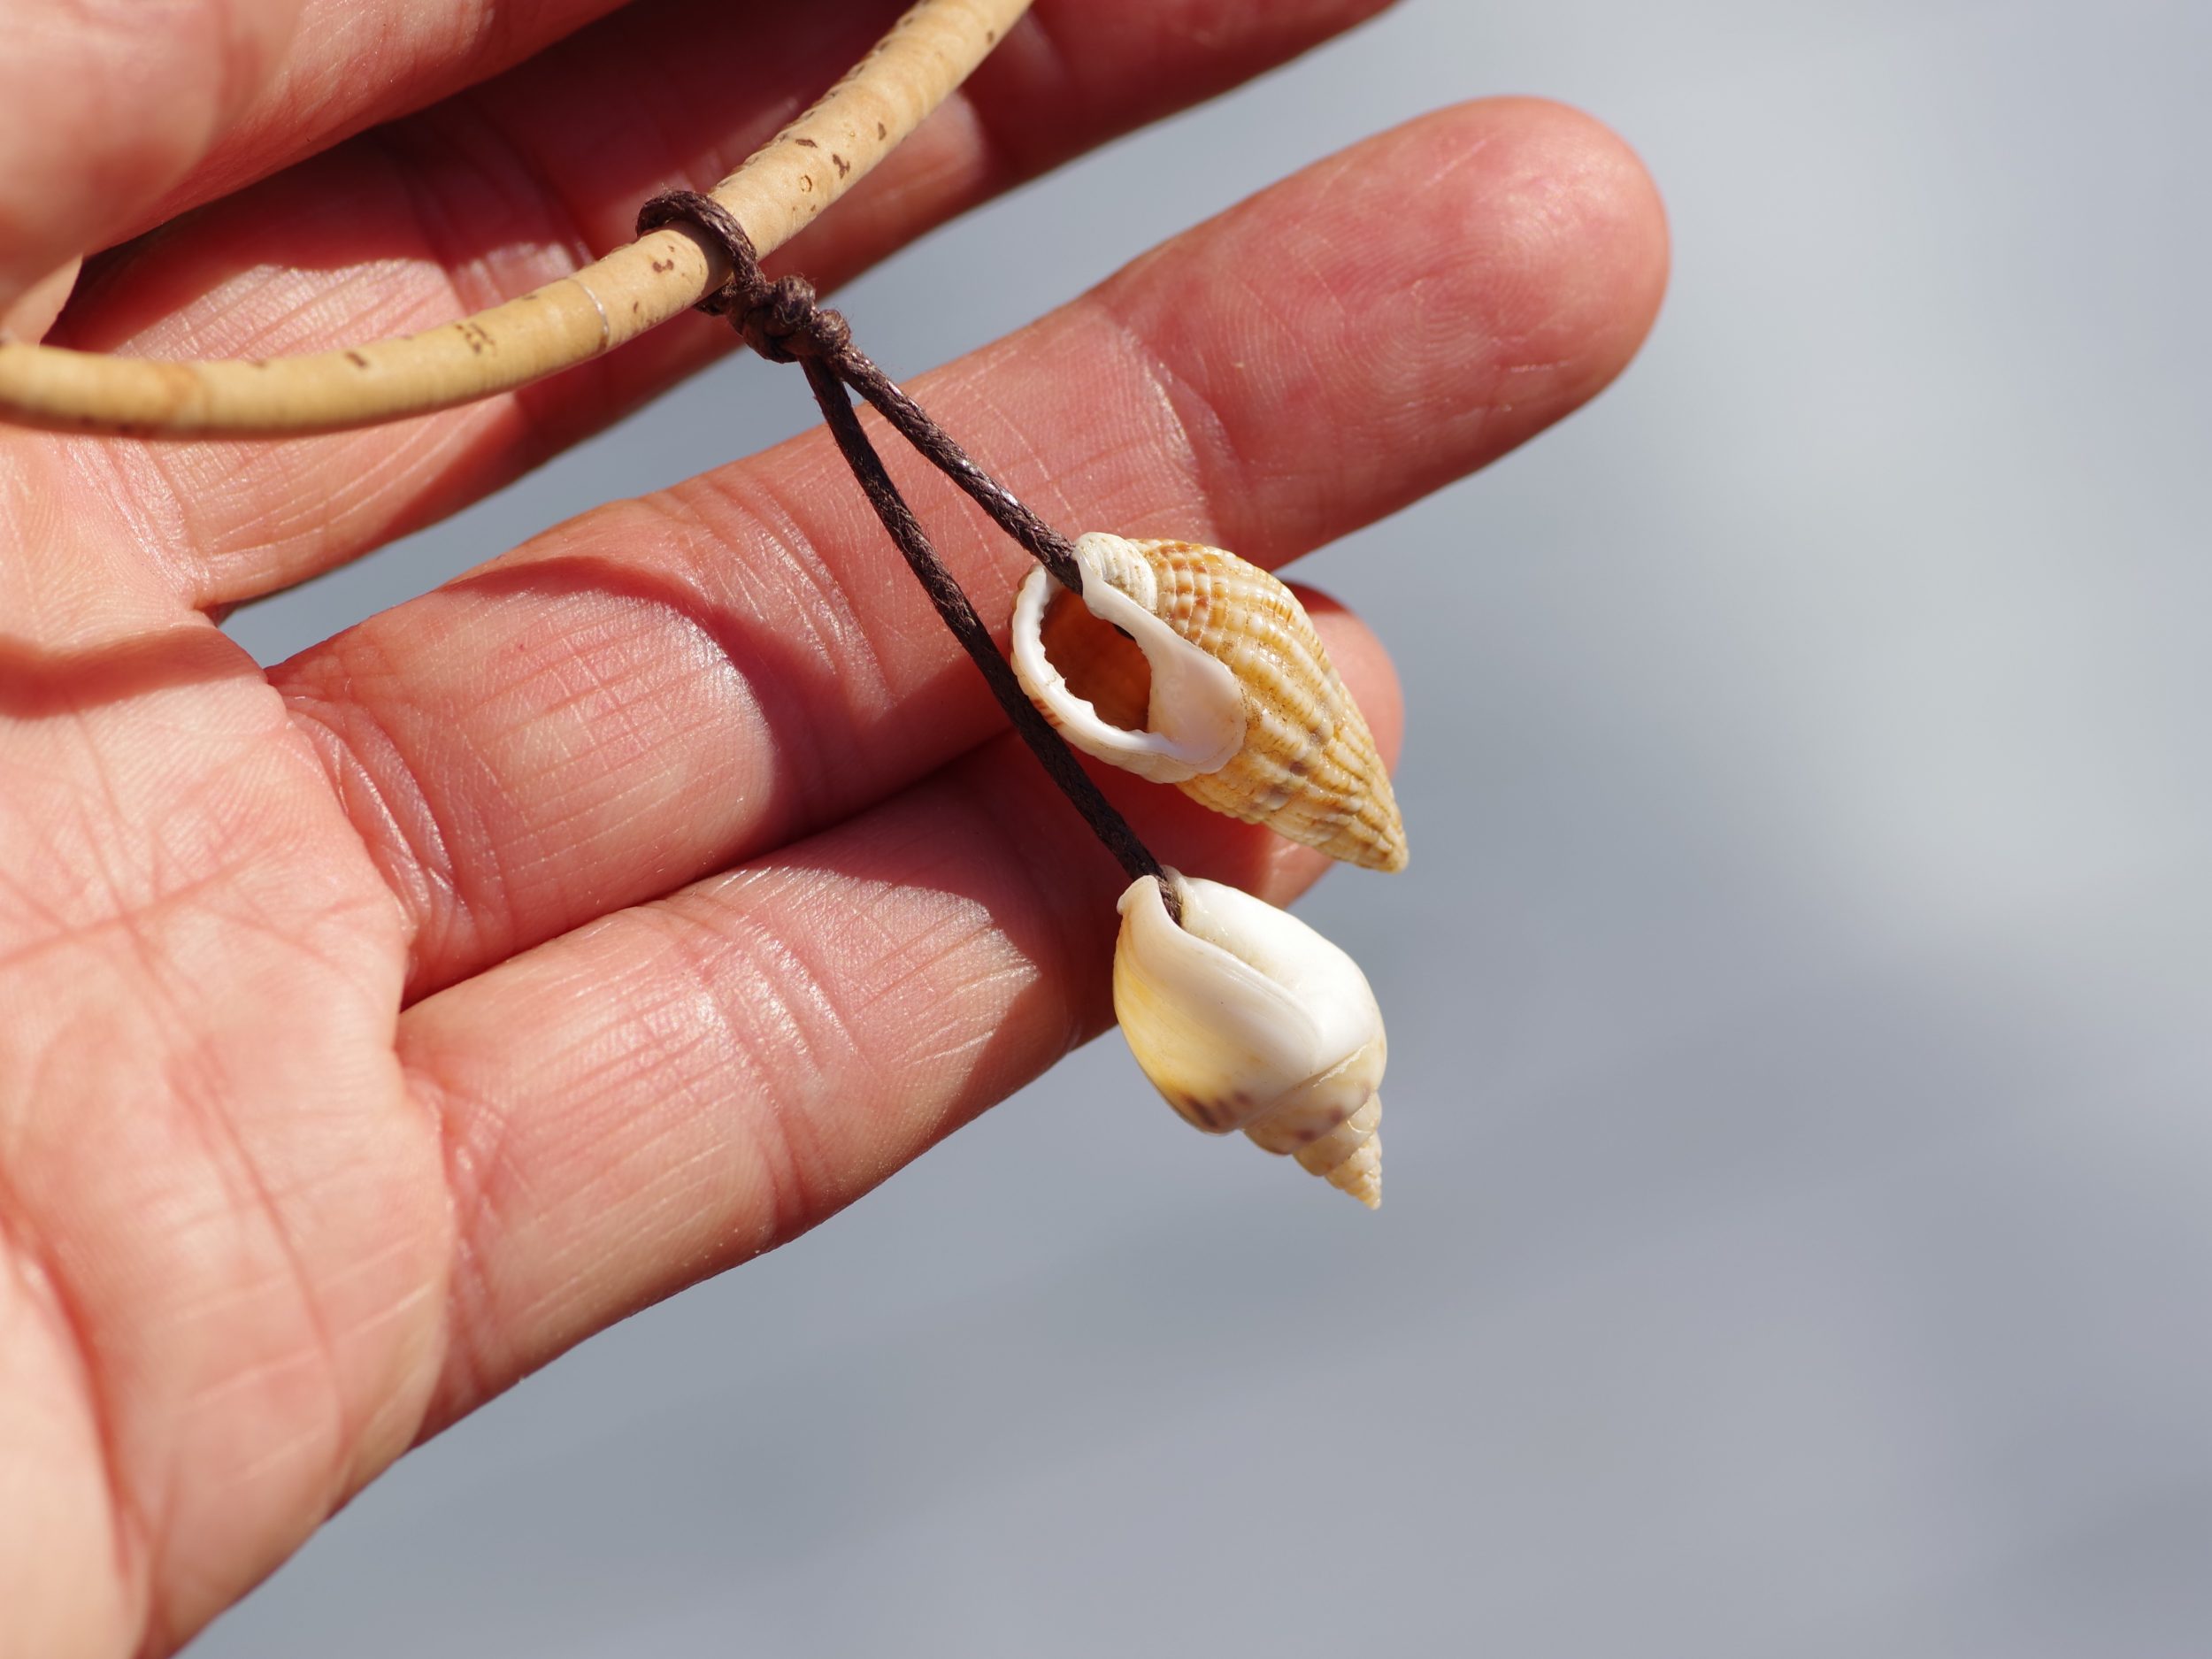 original pendentif coquillages : deux coquillages beiges et bmancs de type escargot marins pointus reliés par un fin cordon de coton, collier en liège beige naturel